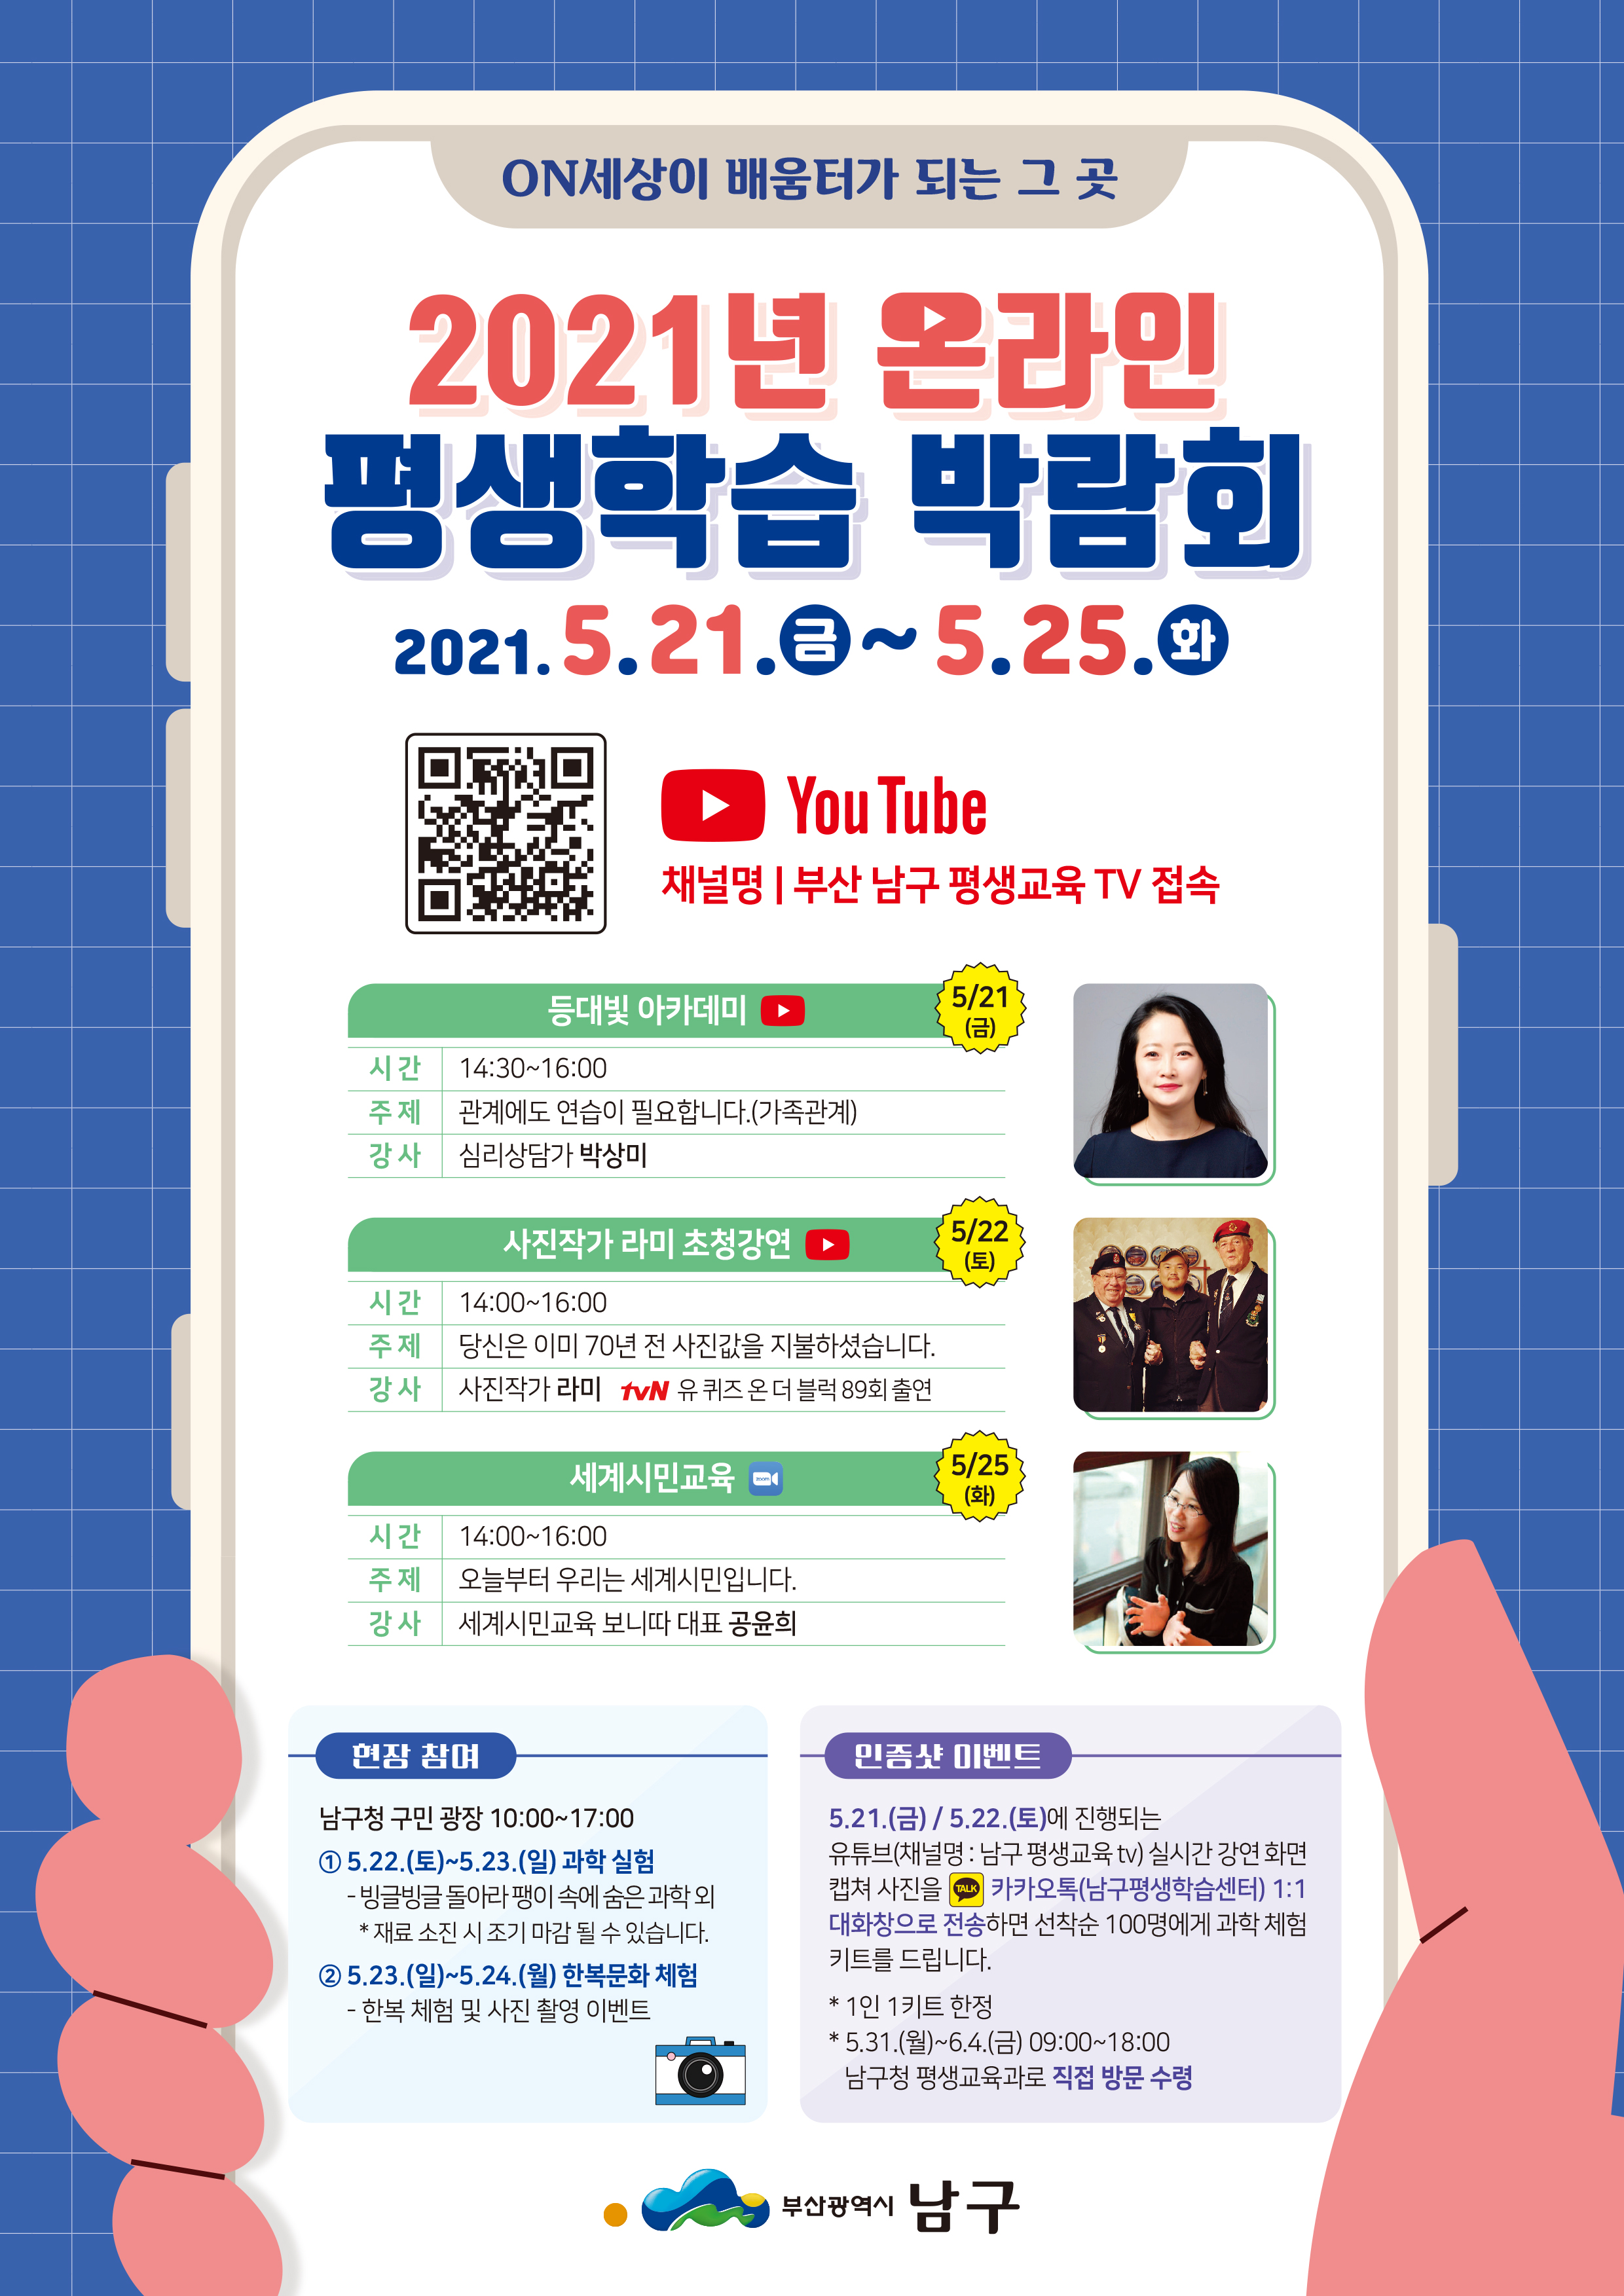 「2021년 온라인 평생학습 박람회」 개최(수정)0